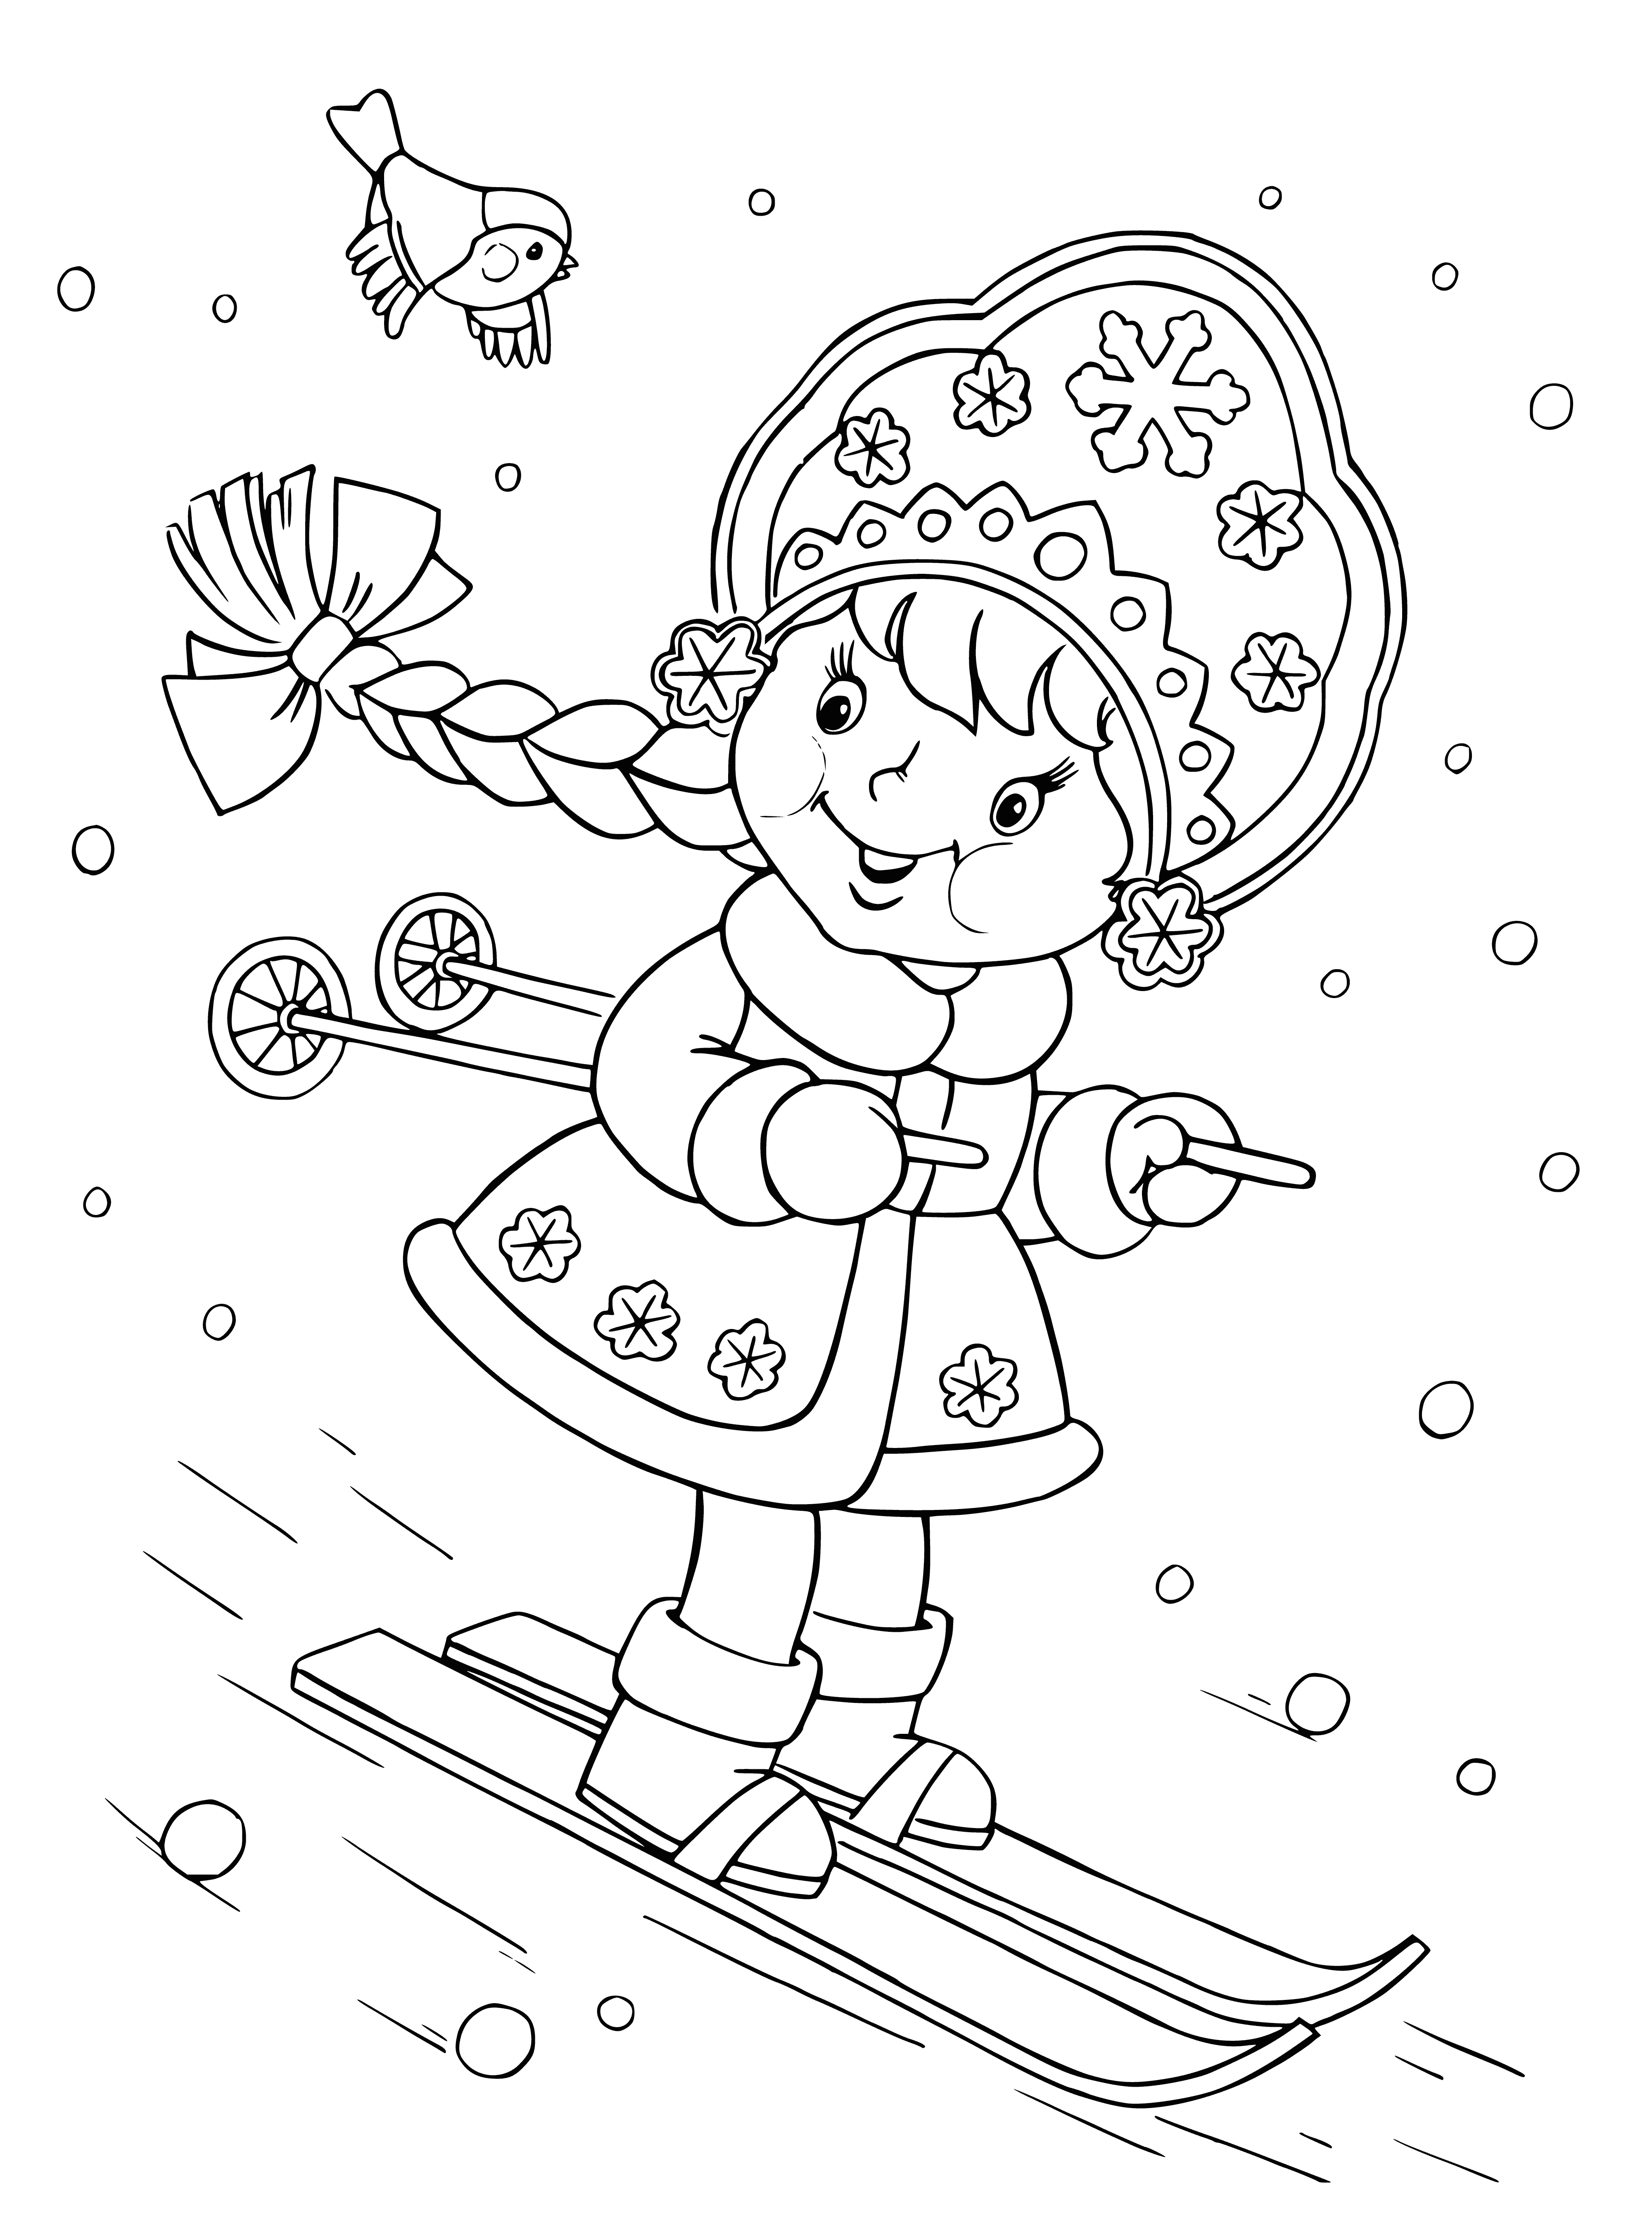 Снегурочка раскраска для детей